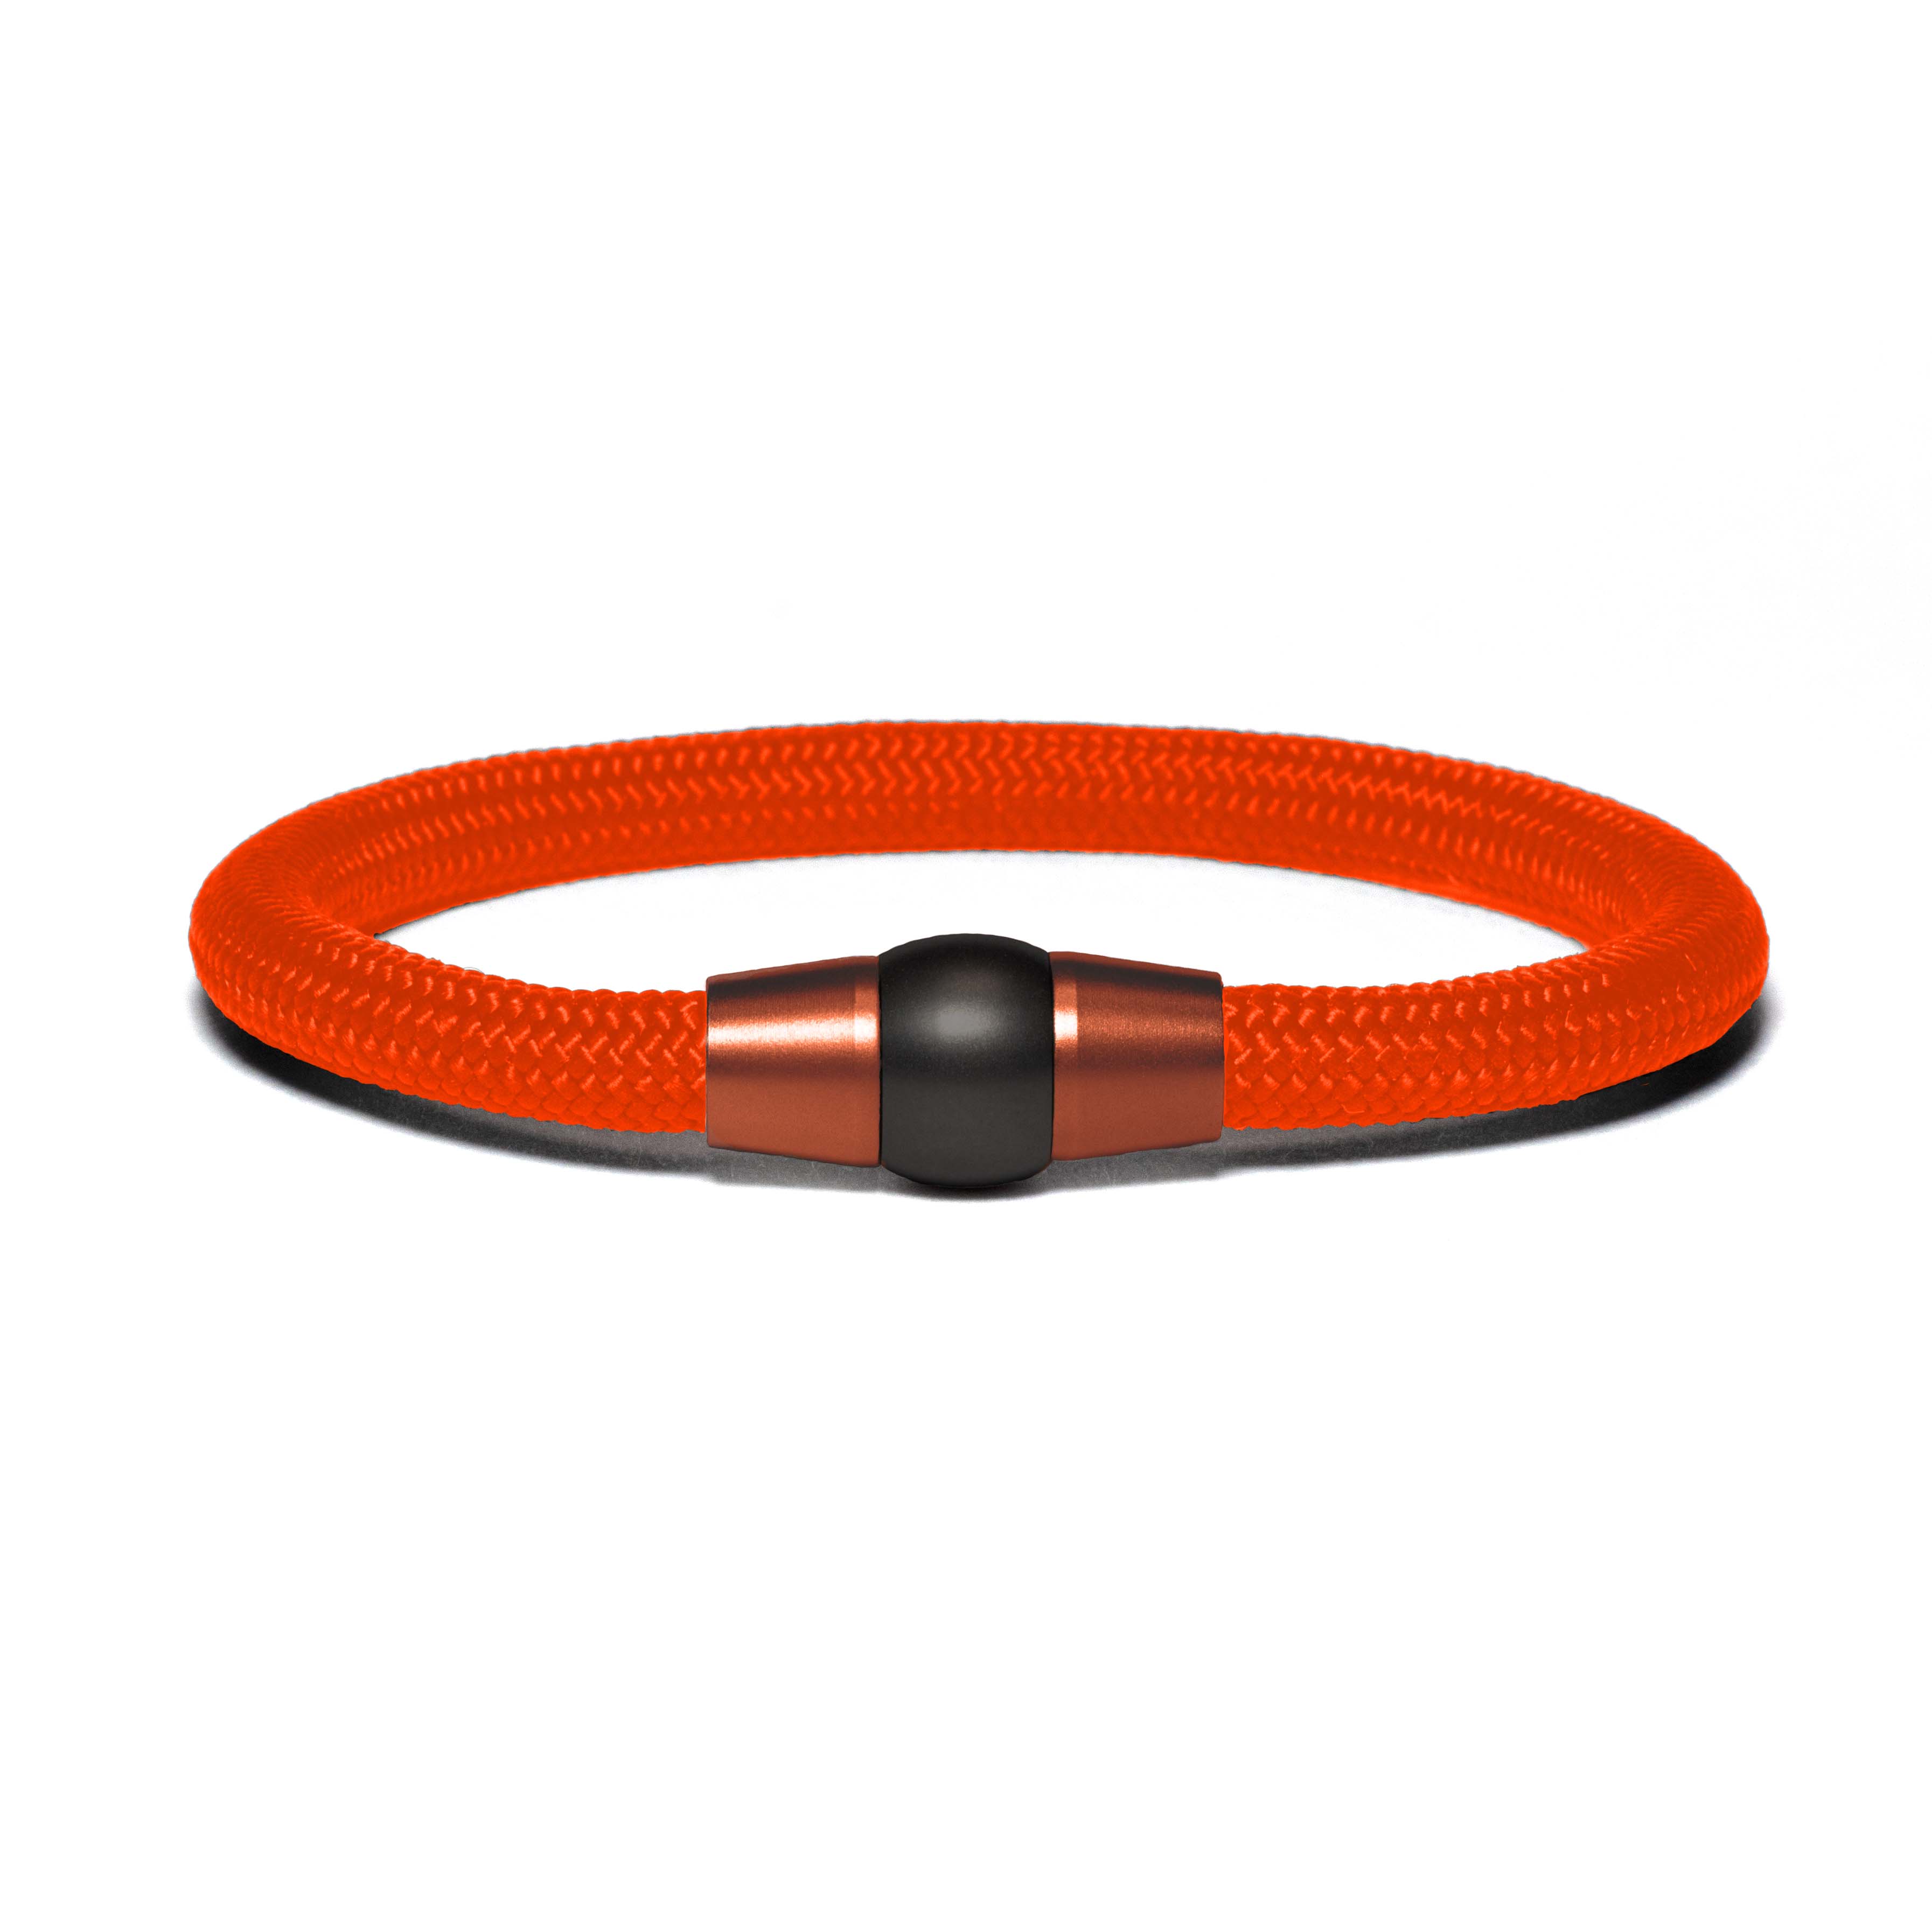 Copper PVD bracelet - neon orange paracord